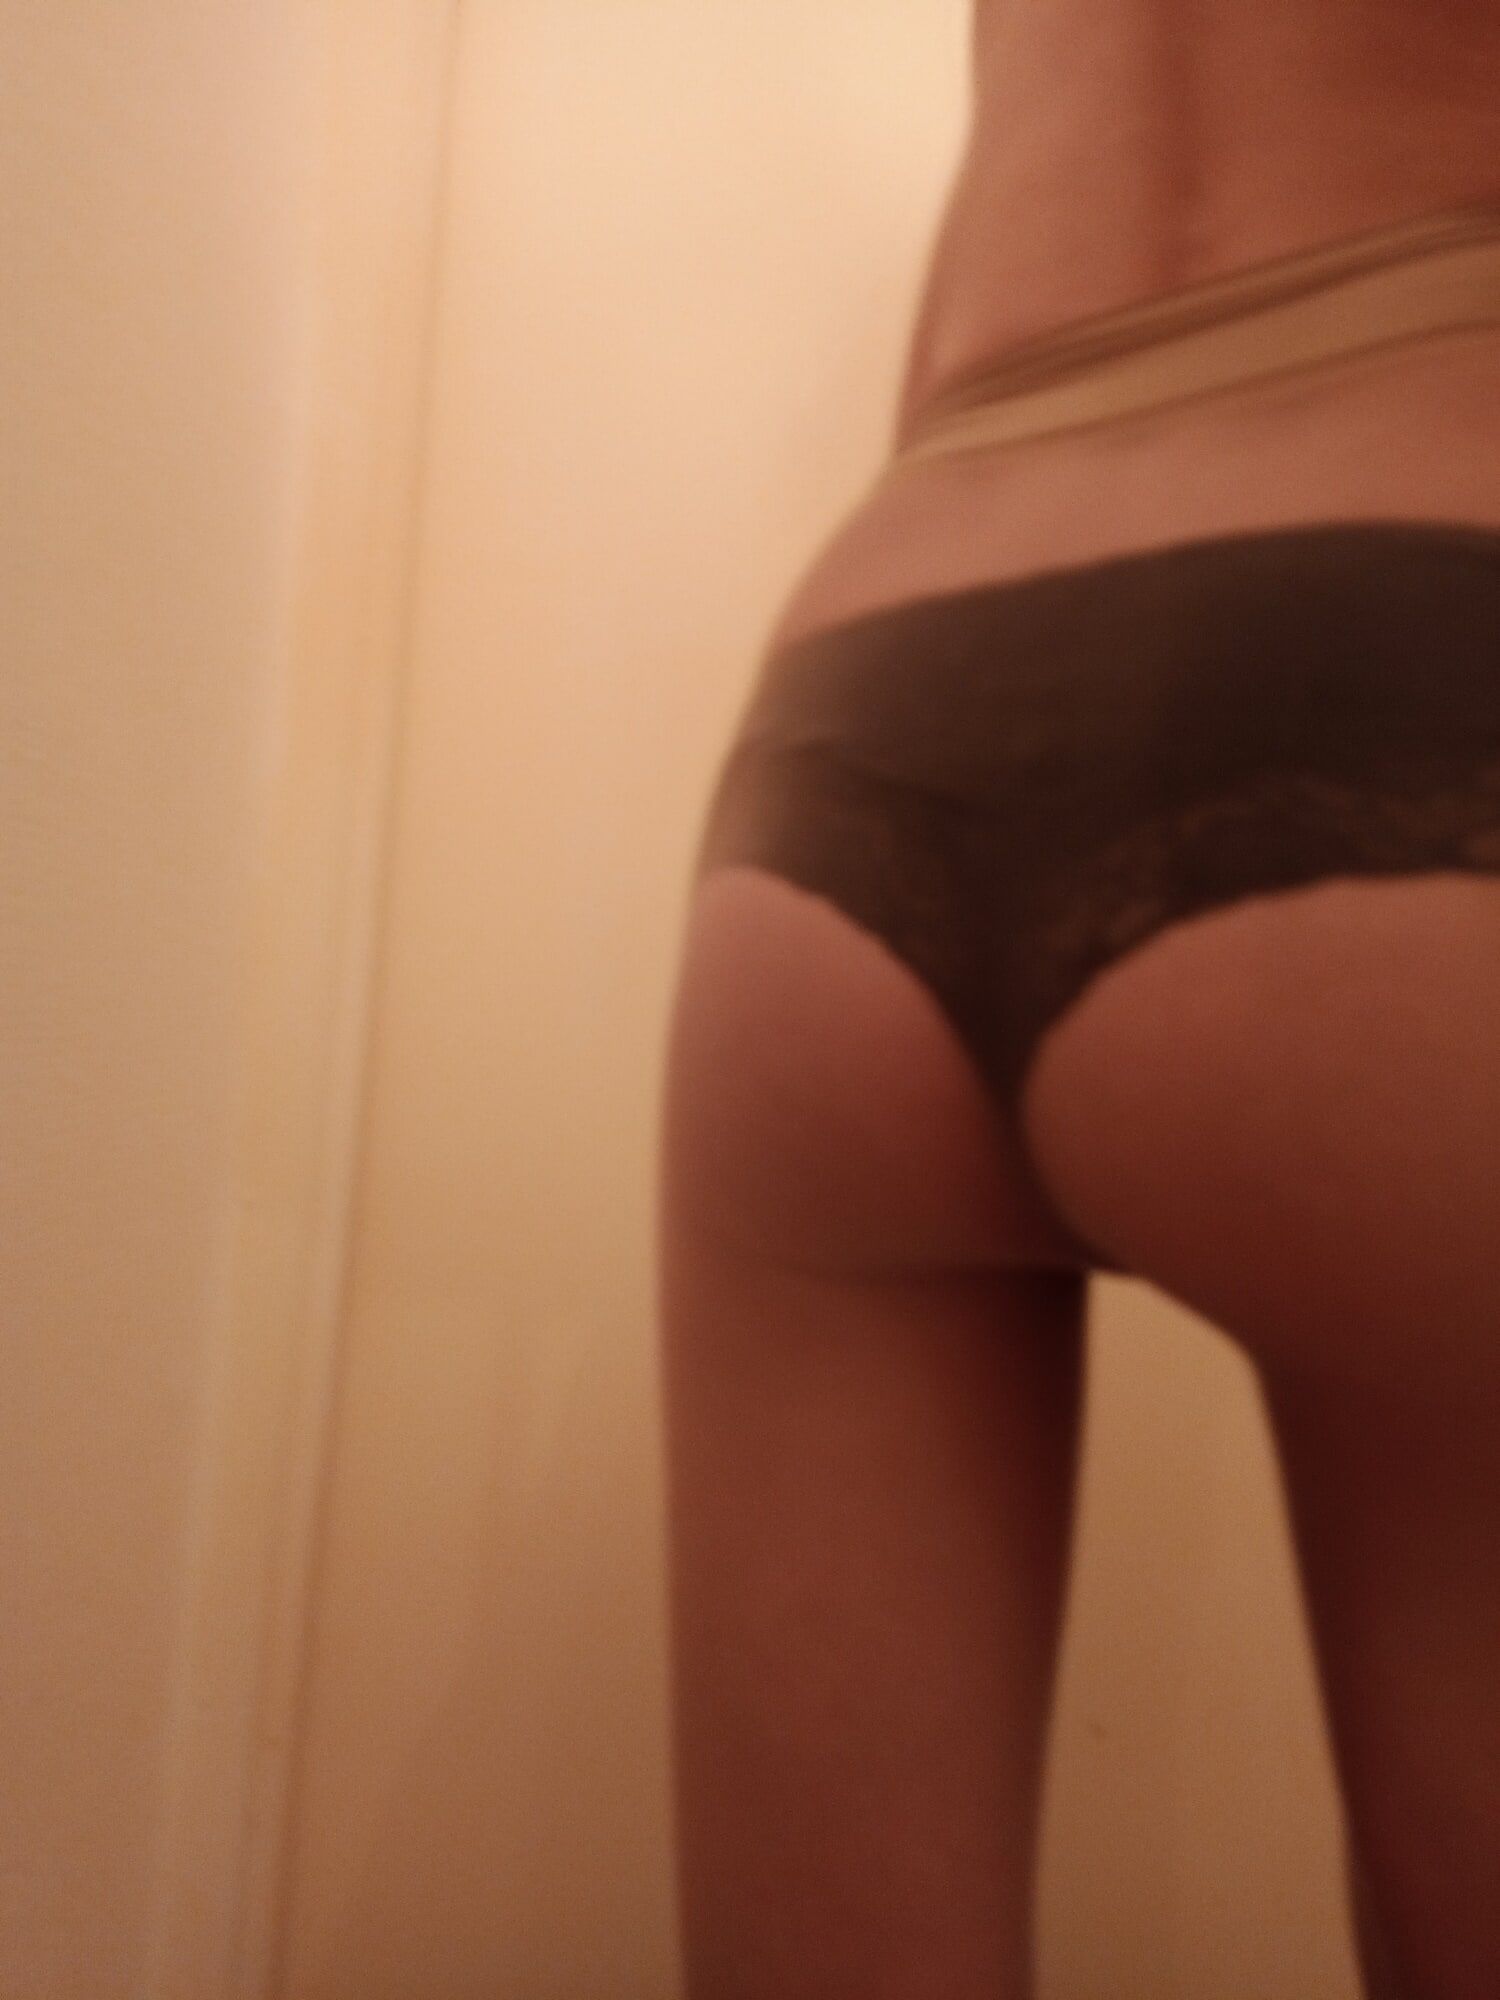 sexy ass 2 #5